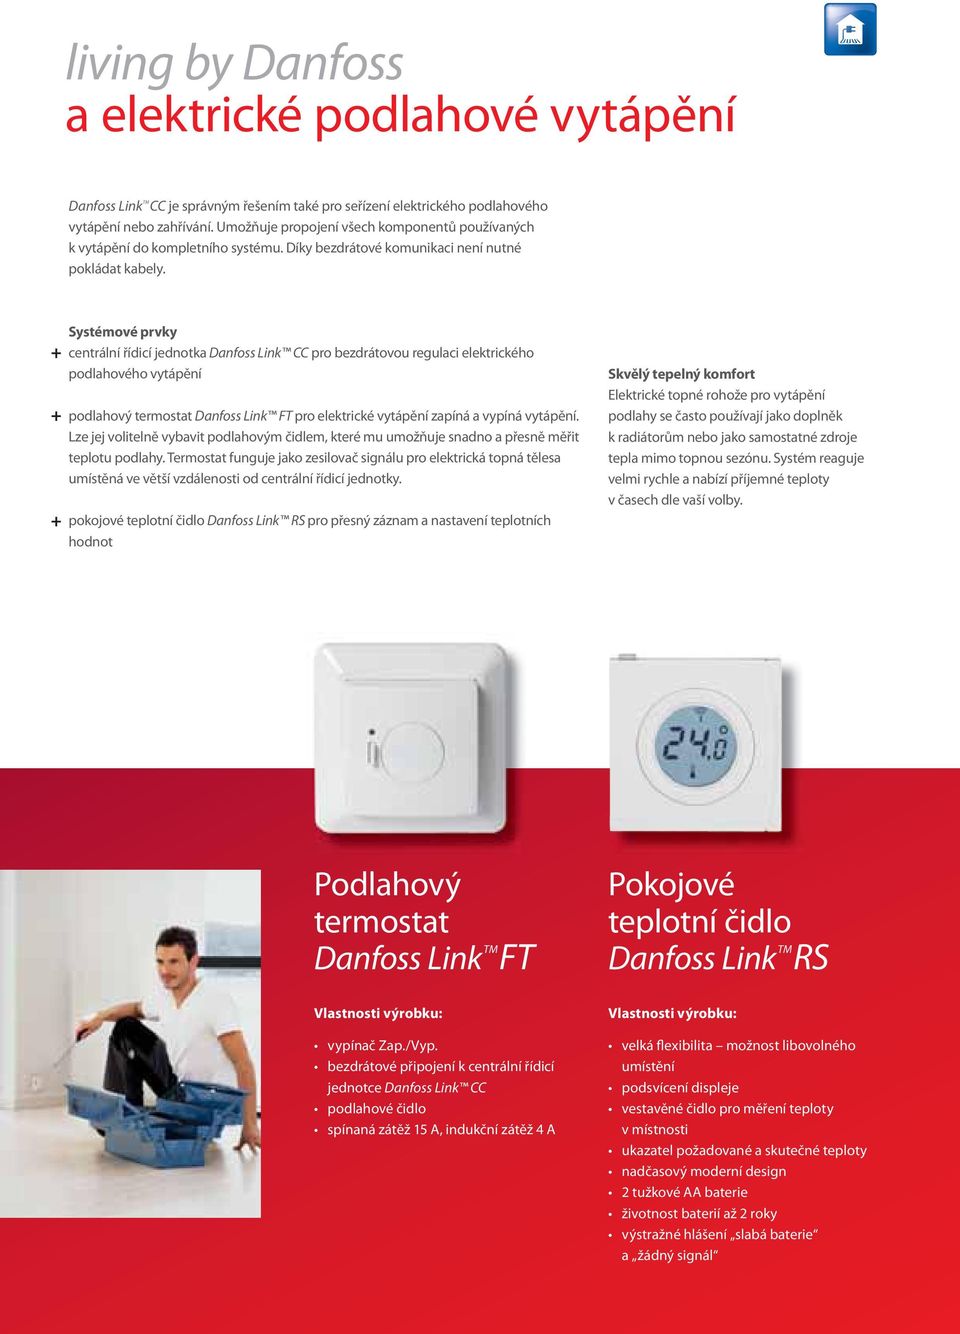 Systémové prvky centrální řídicí jednotka Danfoss Link CC pro bezdrátovou regulaci elektrického podlahového vytápění podlahový termostat Danfoss Link FT pro elektrické vytápění zapíná a vypíná